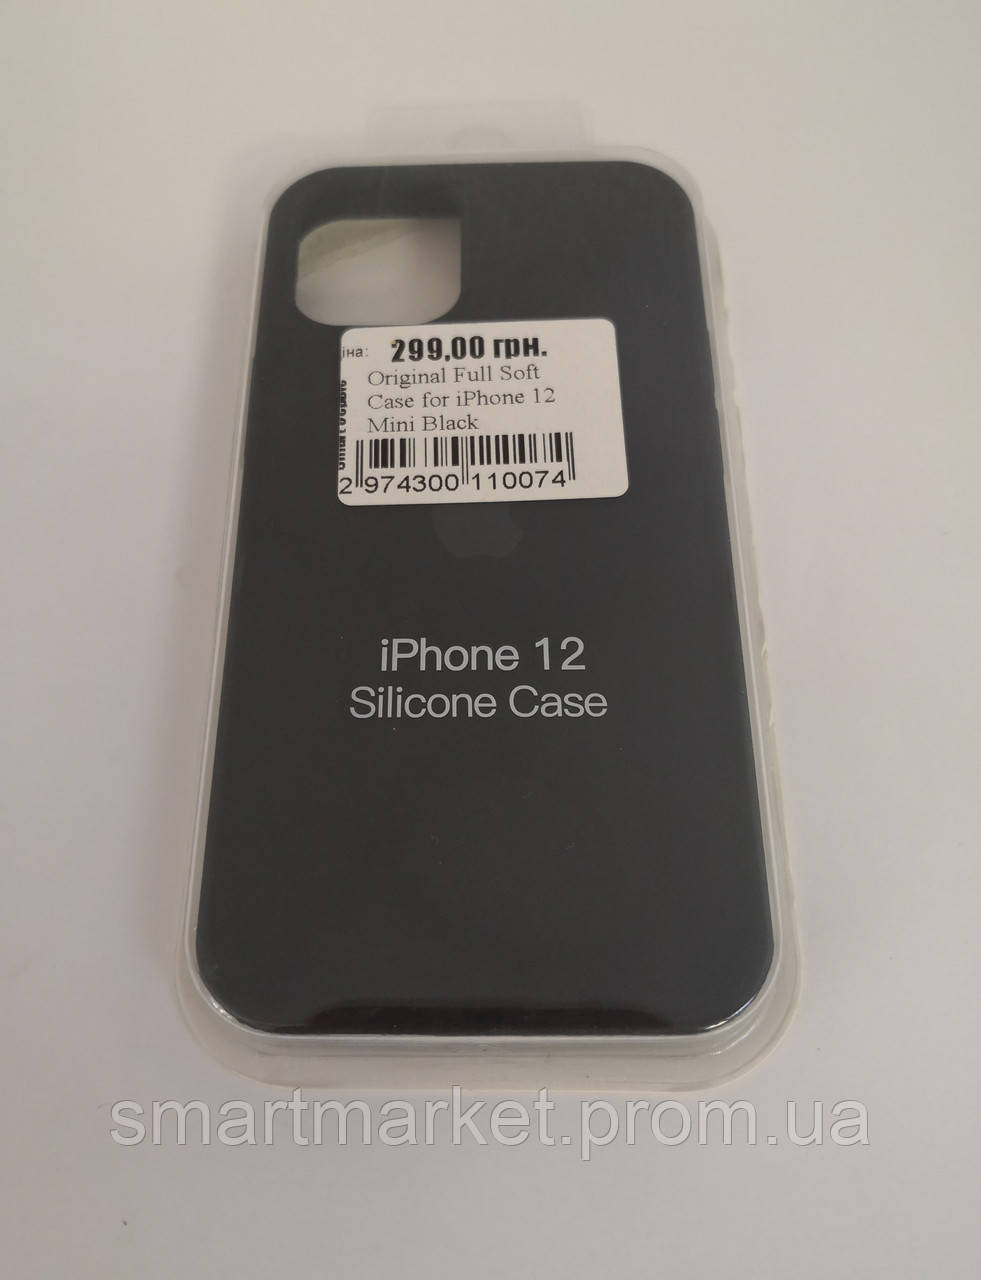 Original Full Soft Case for iPhone 12 Mini Black 81482